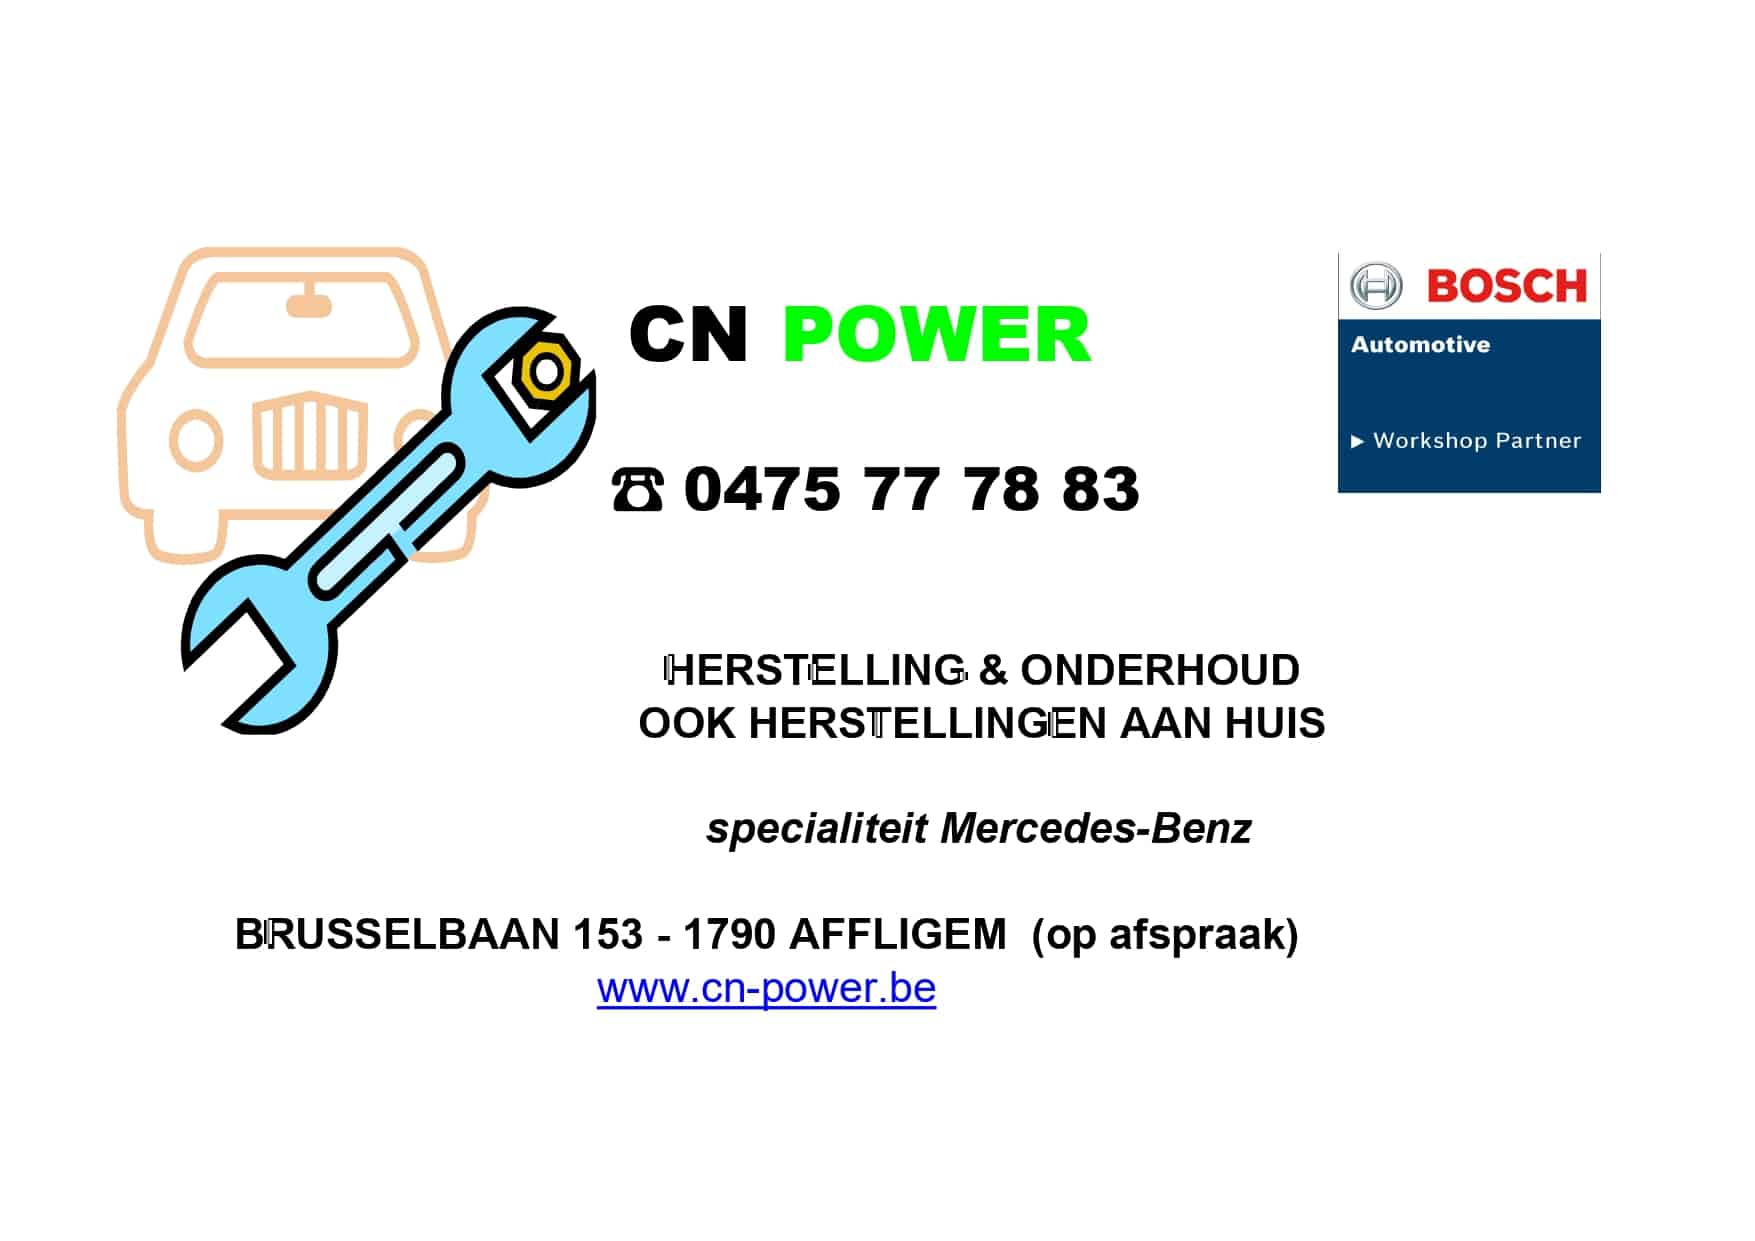 CN POWER LOGO PUBLICITEIT Met Bosch (1) Page 0001